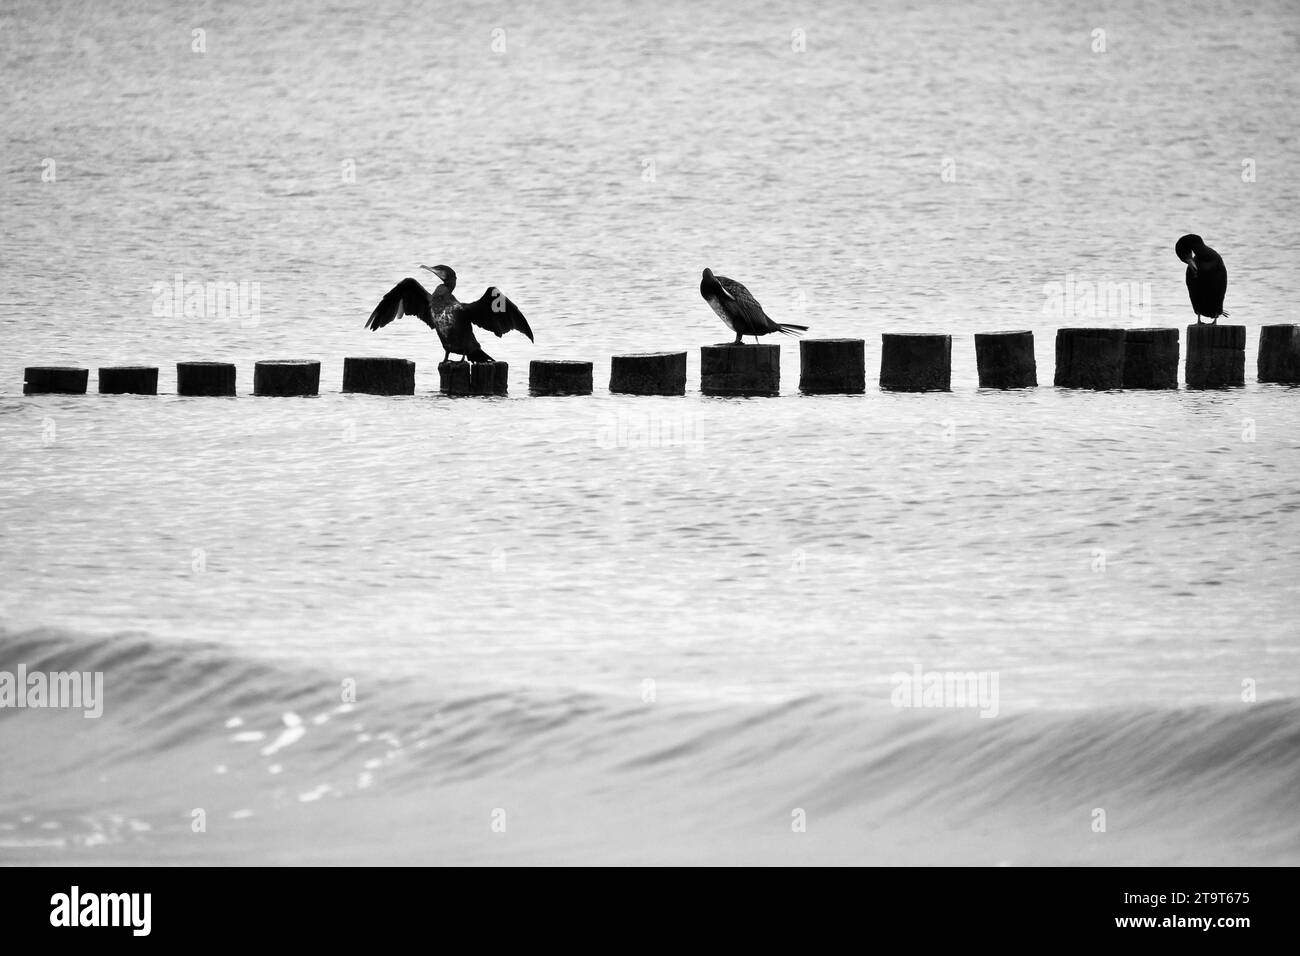 Cormorant sur un groyne sur la mer Baltique en noir et blanc. Les oiseaux sèchent leurs plumes au soleil. Vagues dans la mer sous un ciel bleu. Photo d'animal f Banque D'Images